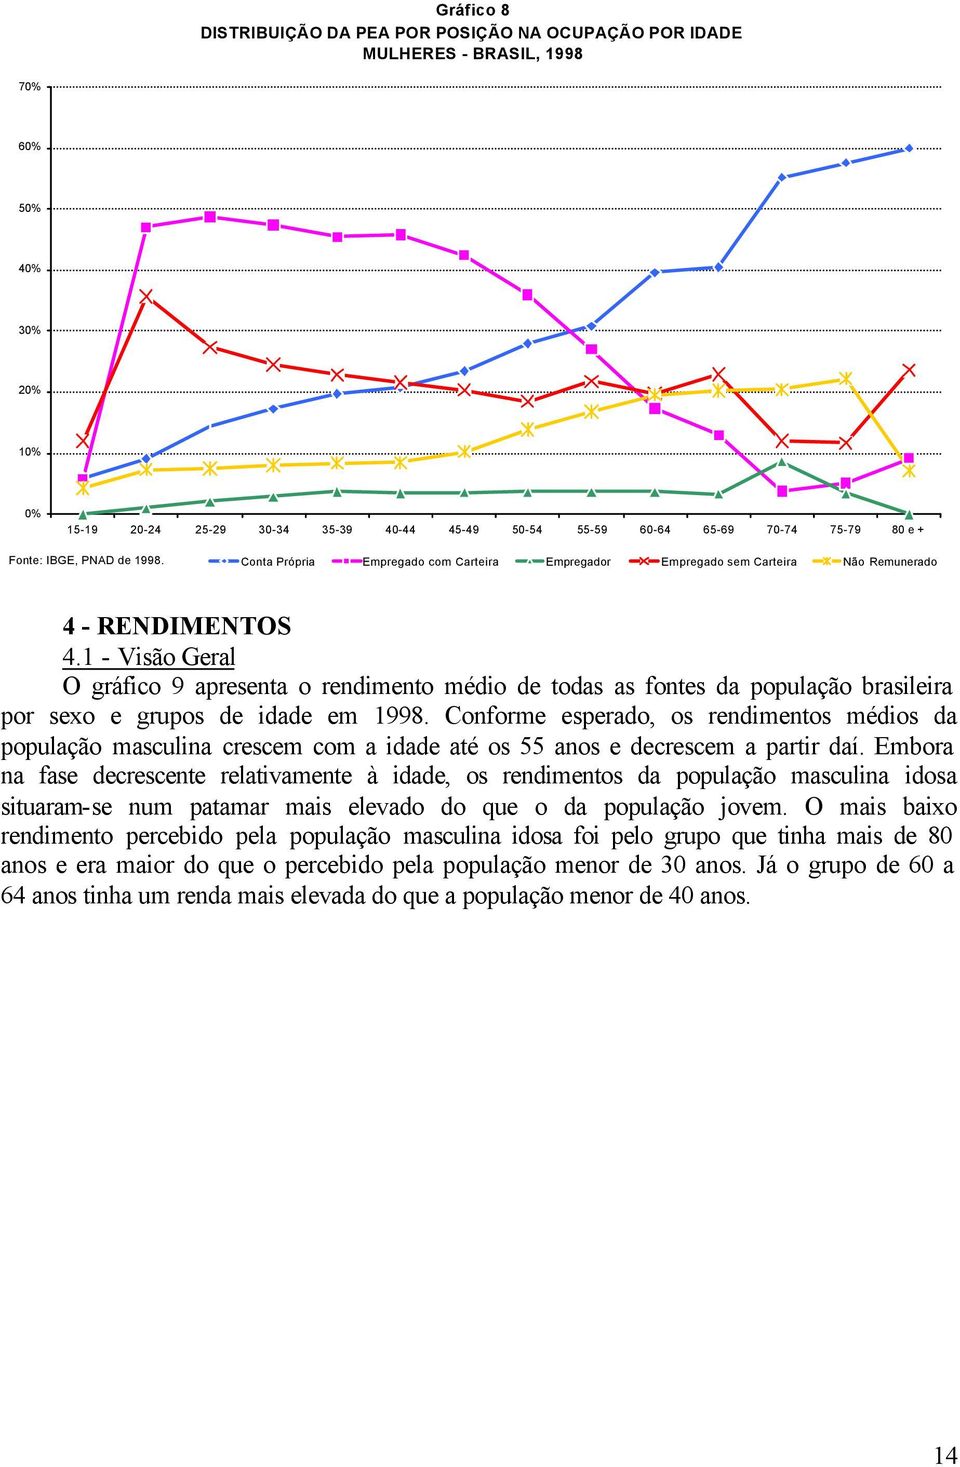 1 - Visão Geral O gráfico 9 apresenta o rendimento médio de todas as fontes da população brasileira por sexo e grupos de idade em 1998.